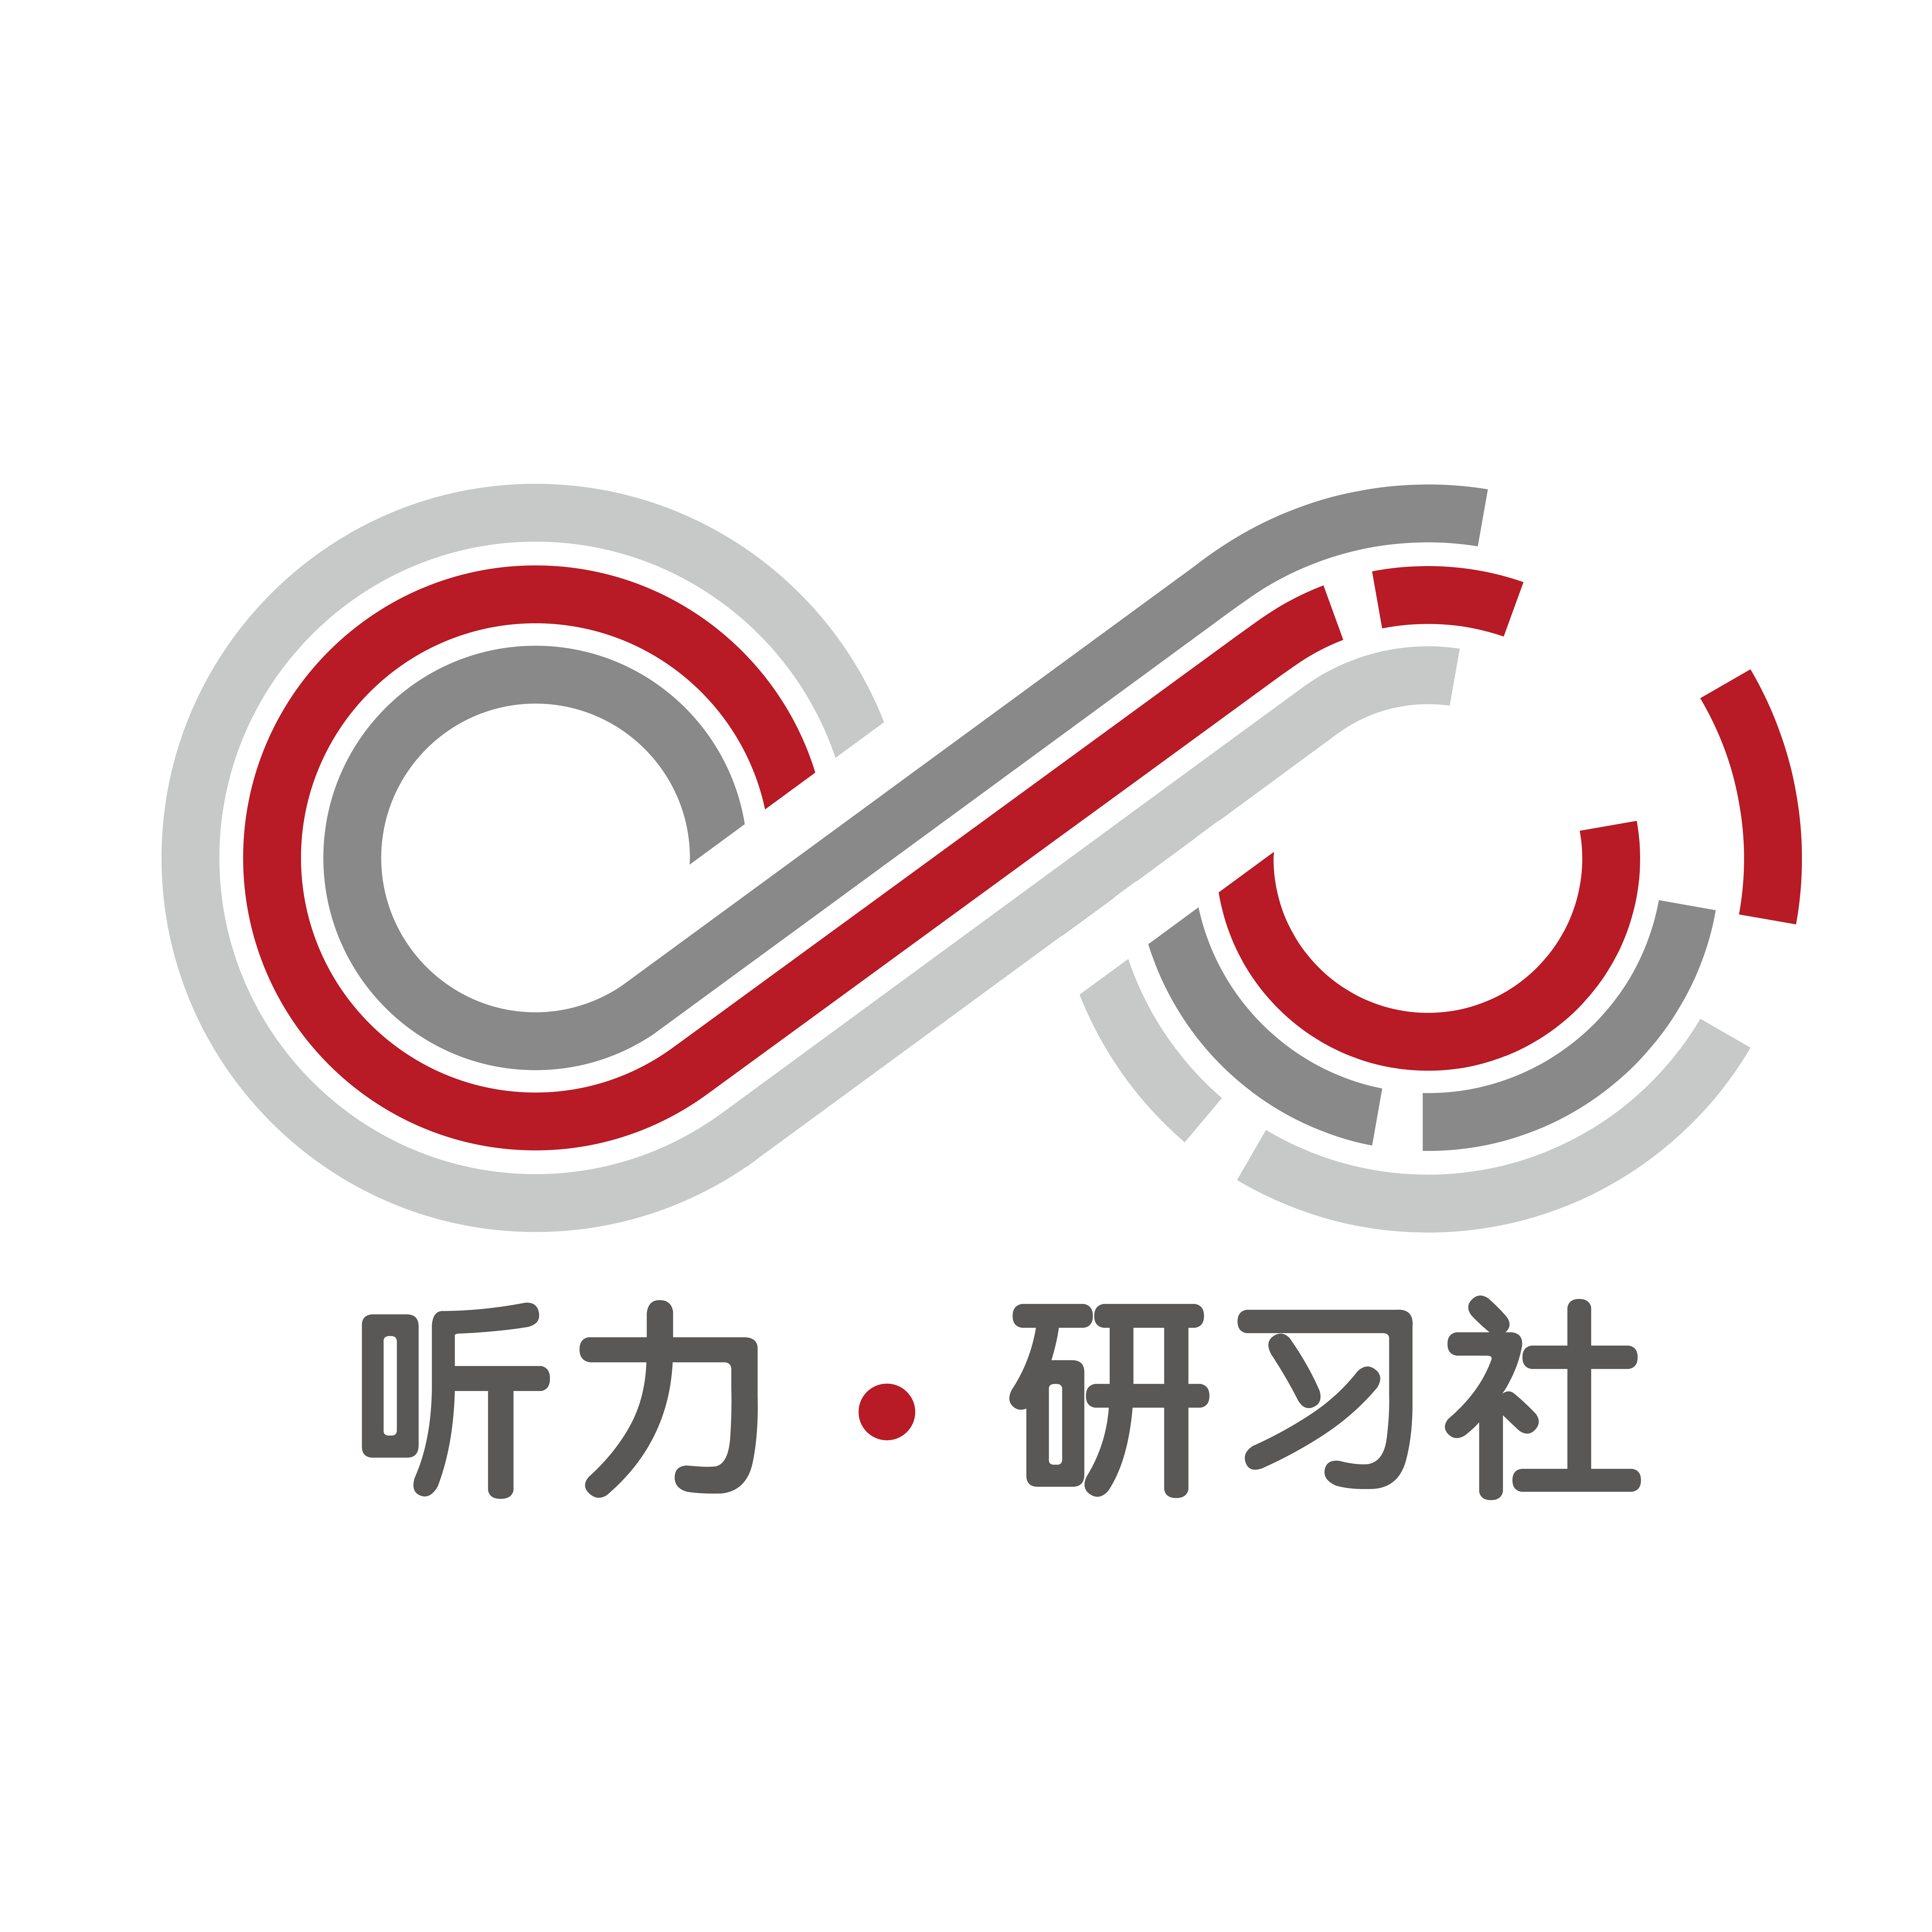 听力研习社logo-fa_画板 1.png